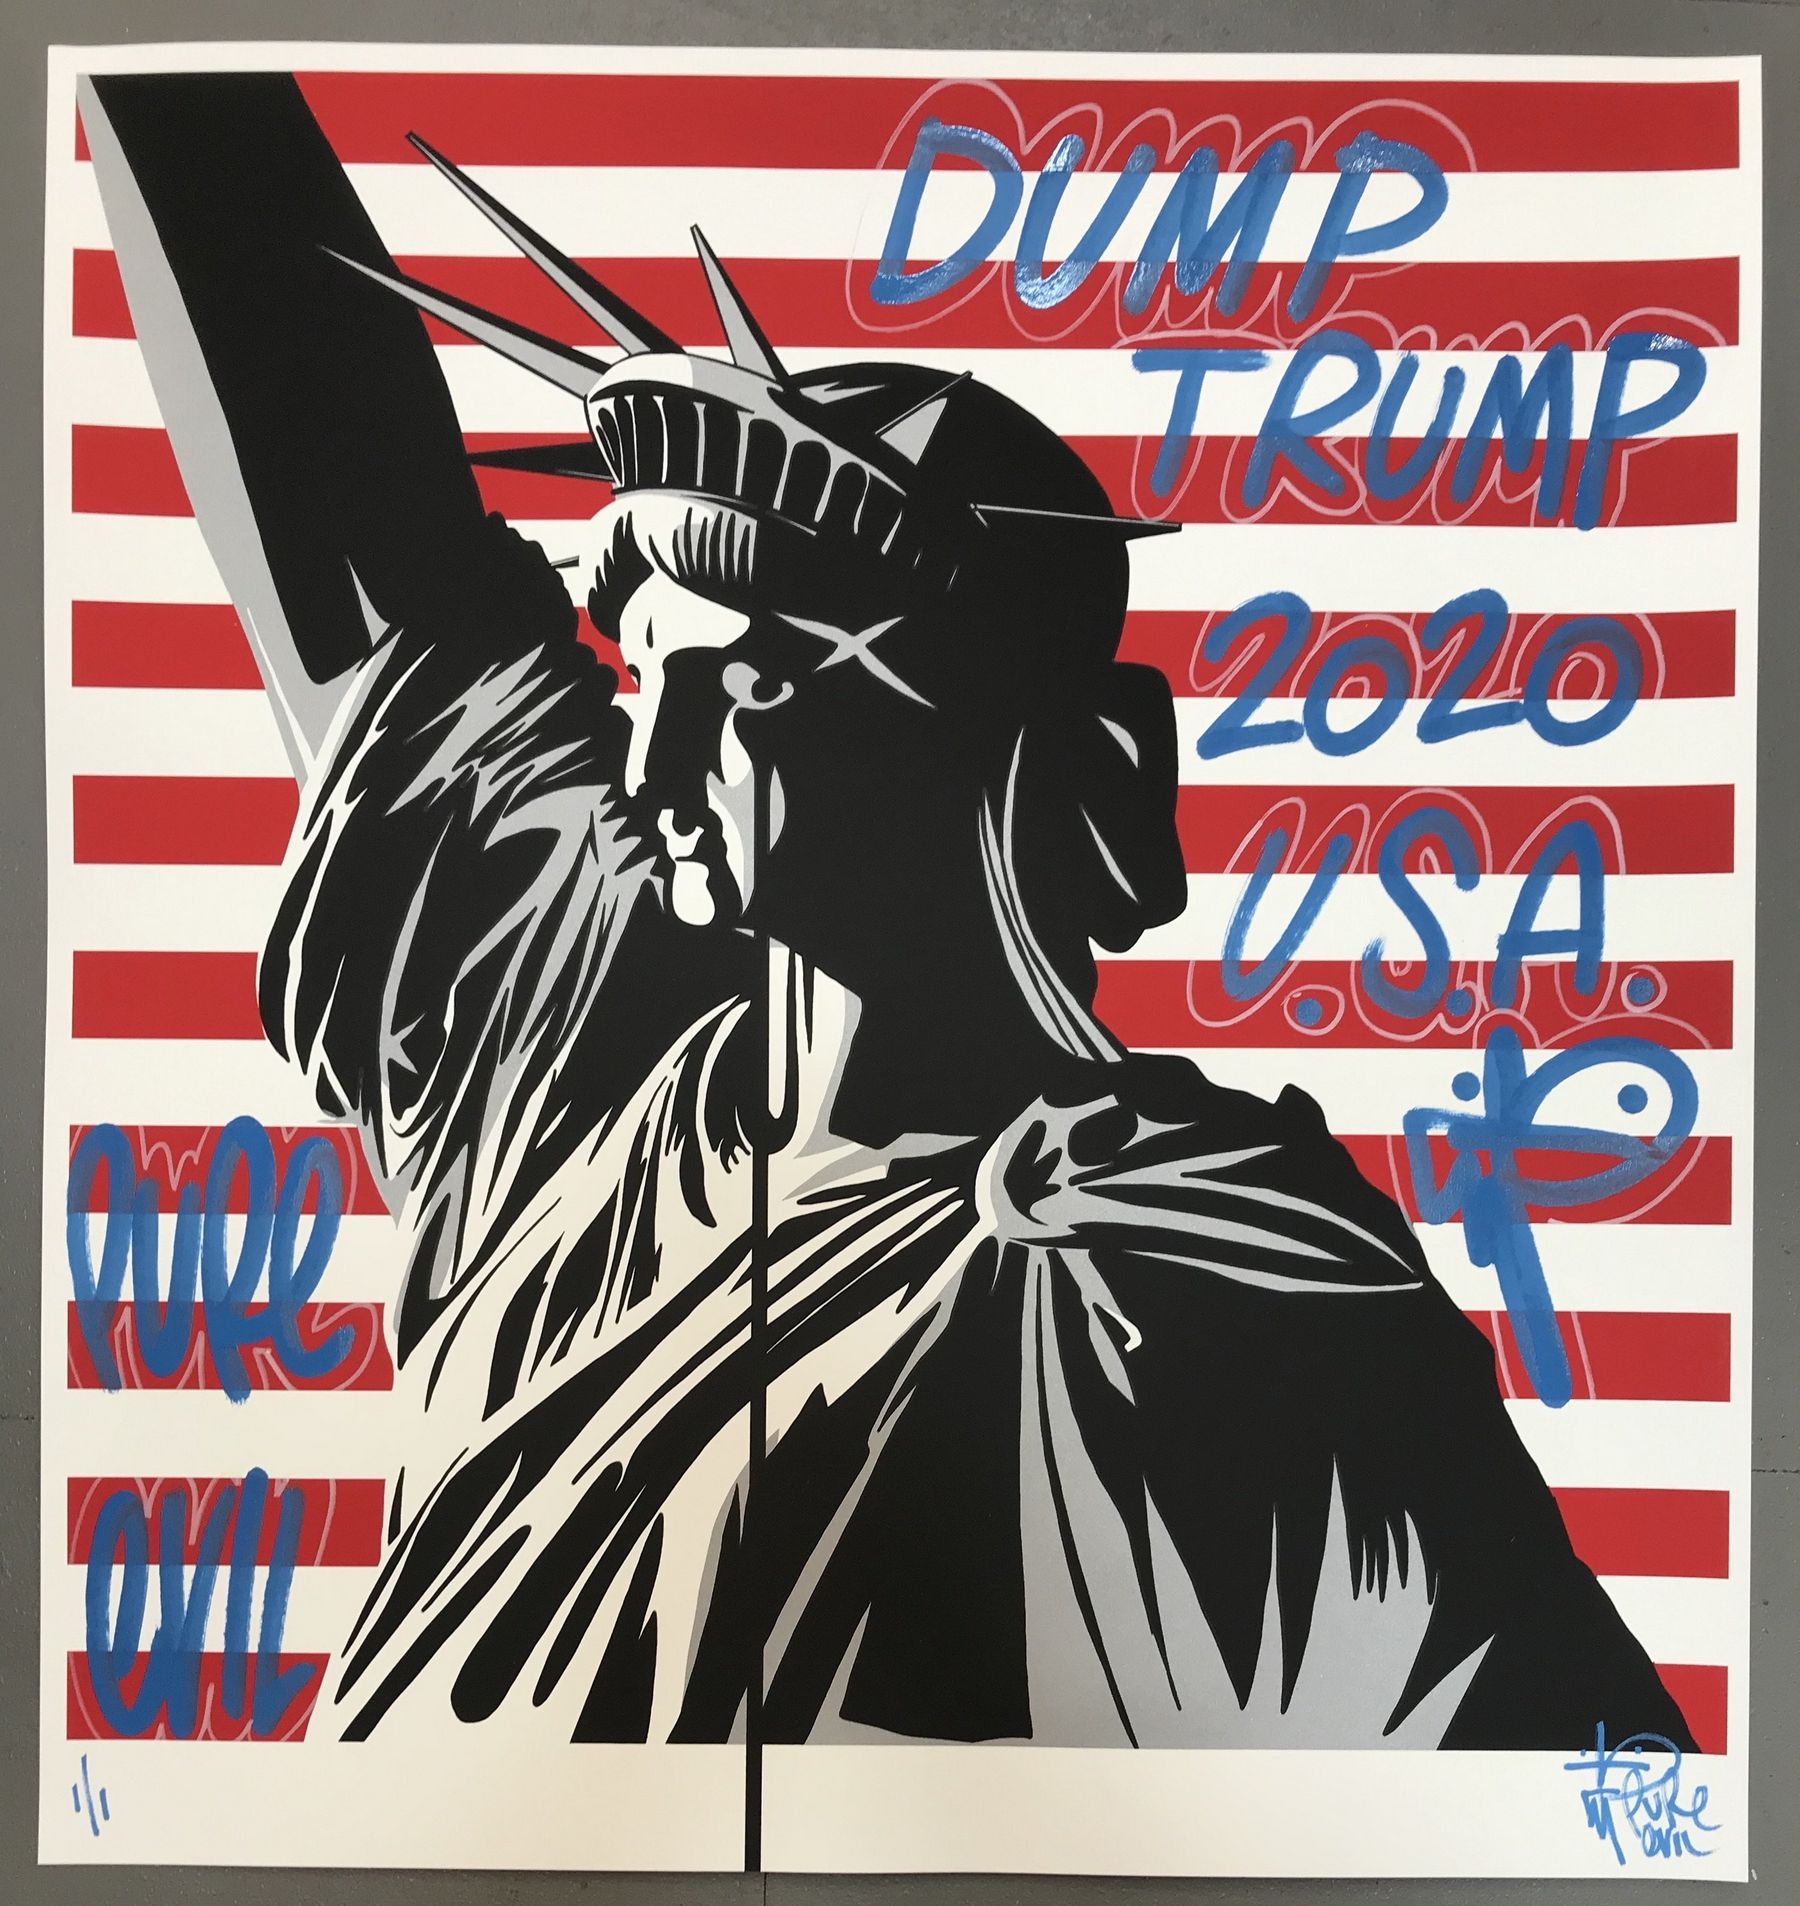 Null 1968年出生的纯正邪恶 

美国的恶梦，2020年

弗雷戈尼330克纸上的手绘印刷品，签名和编号为1/1

75x70厘米